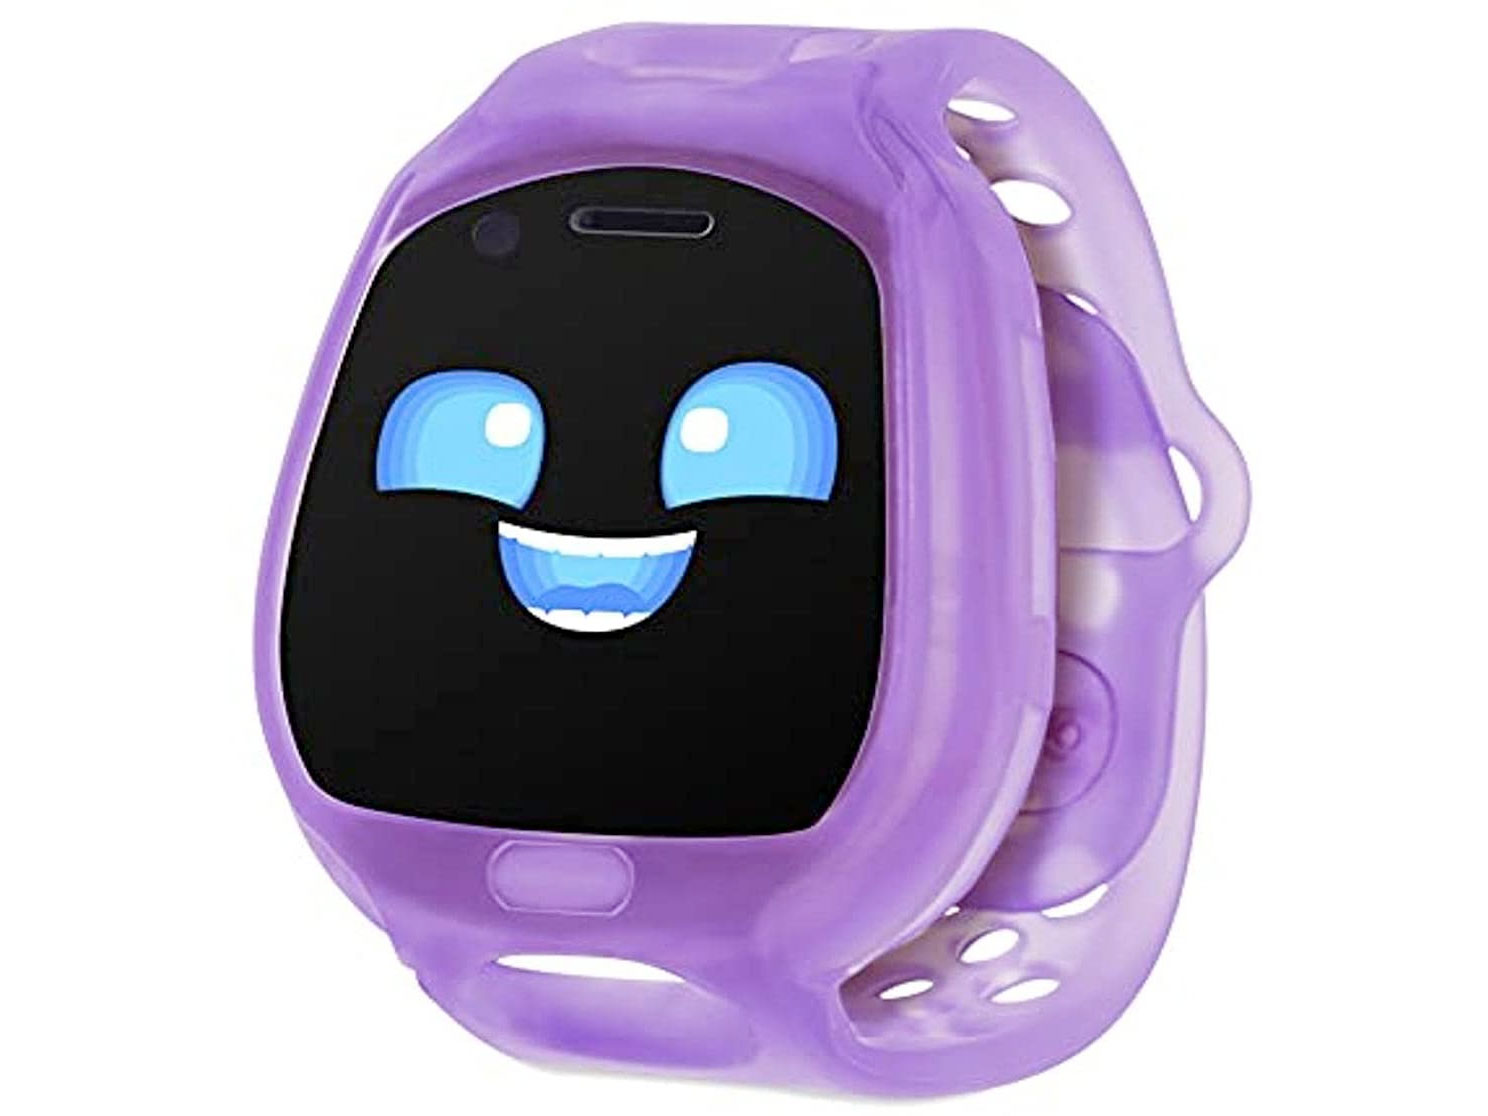 Amazon：Little Tikes Tobi 2 Robot Smartwatch只賣$39.50